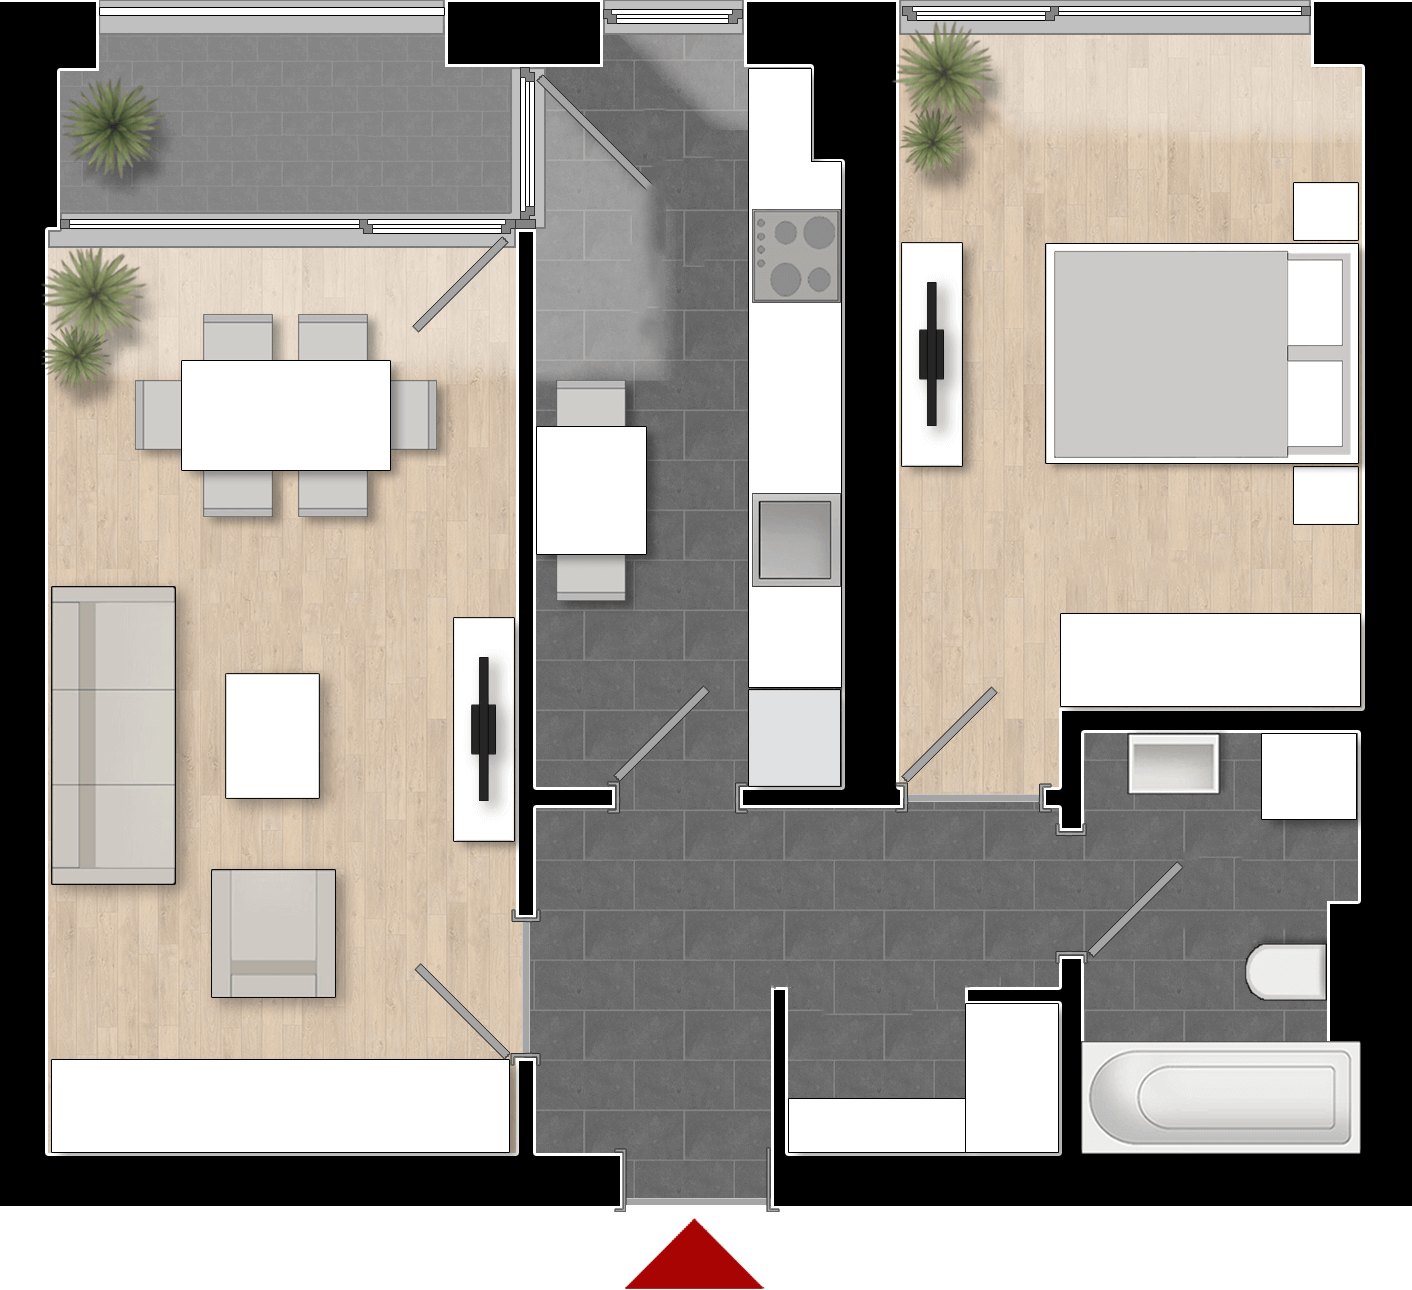  Apartament Tip 2A cu 2 camere 